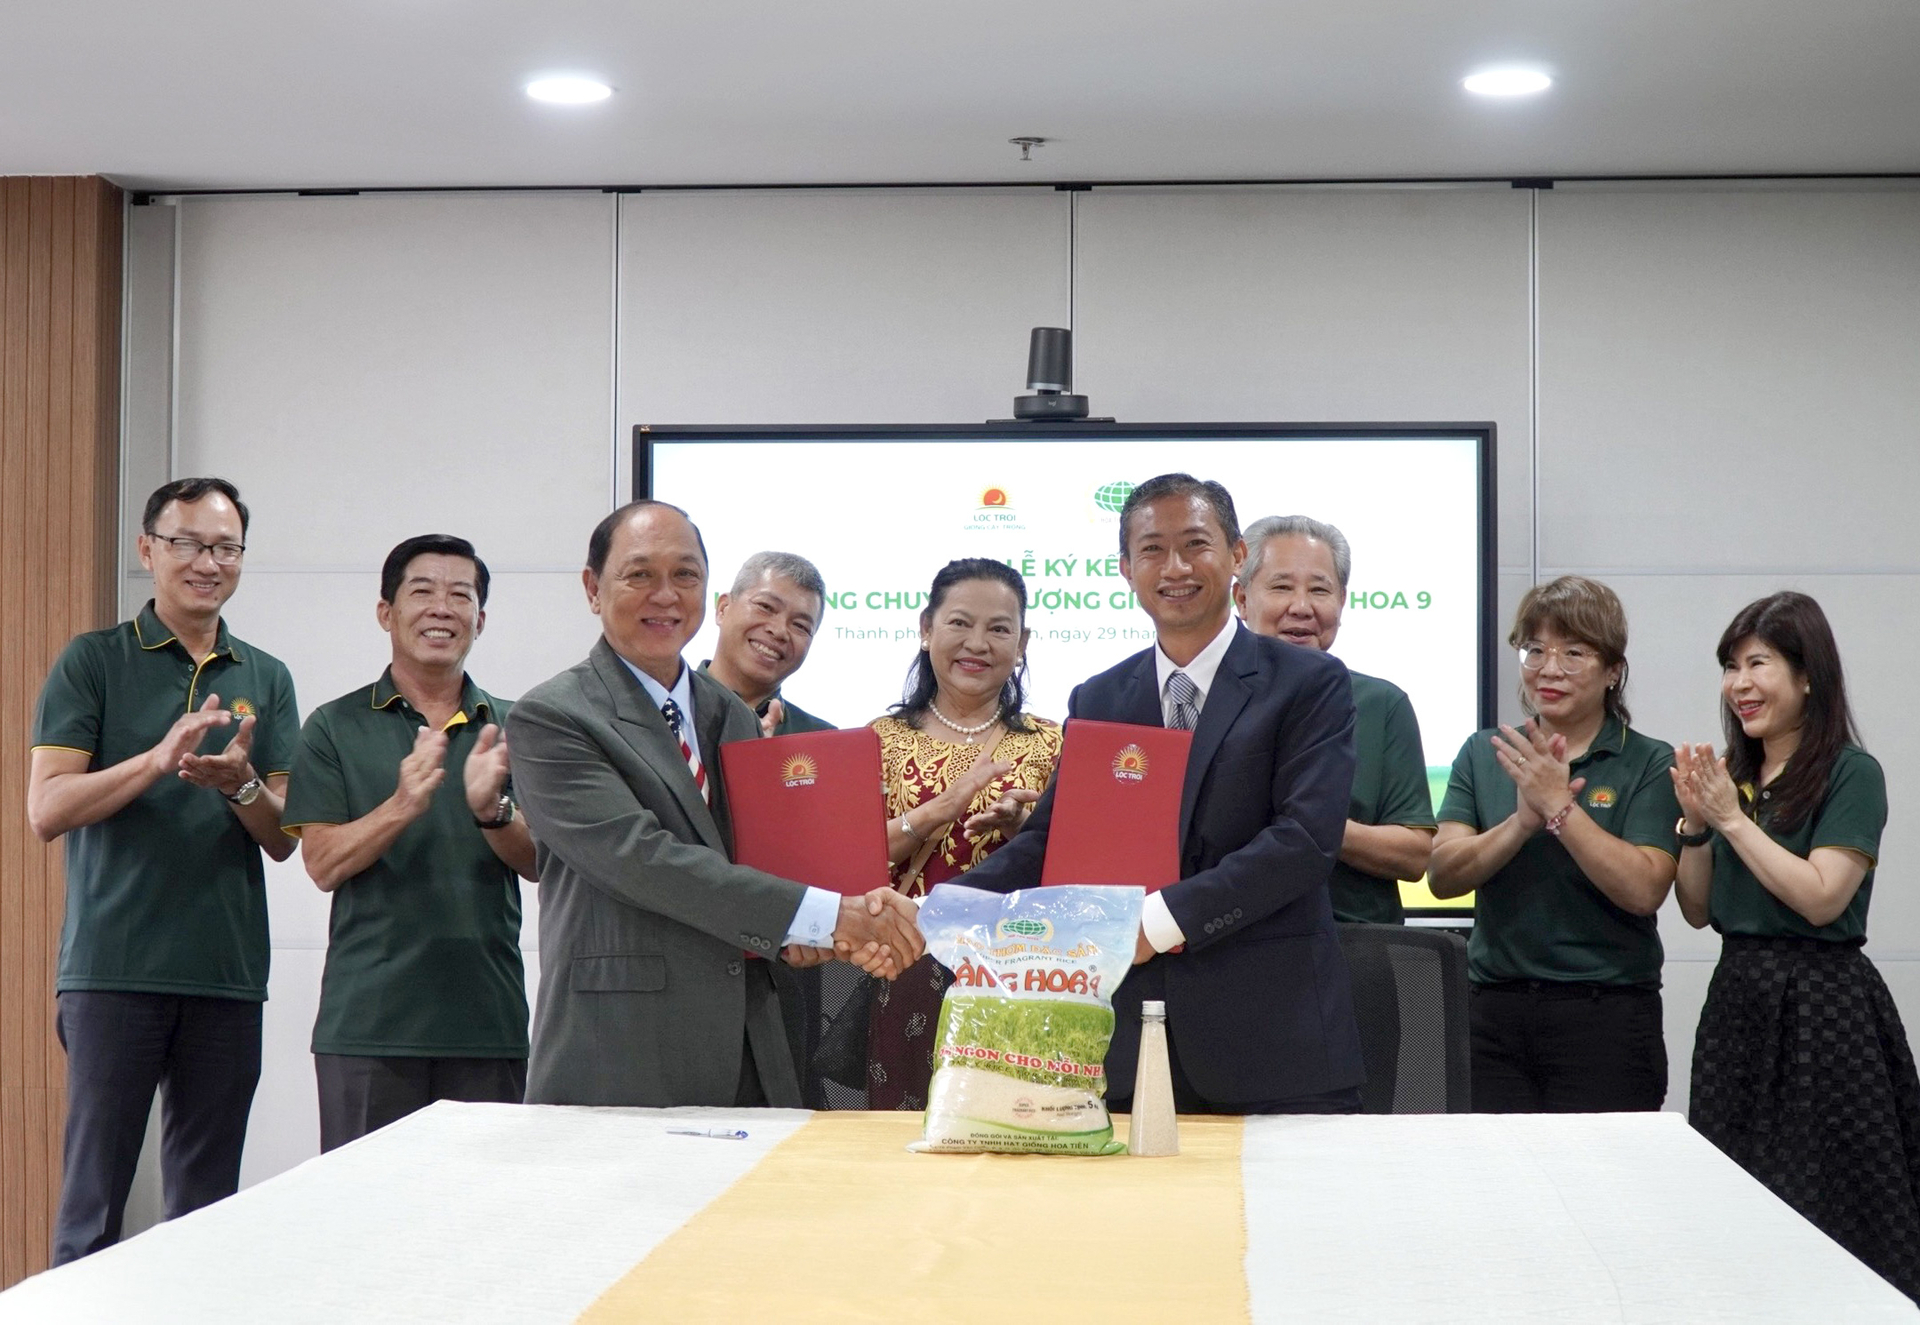 Ký kết hợp đồng chuyển nhượng quyền giống lúa Nàng Hoa 9 giữa Công ty Cổ phần Giống cây trồng Lộc Trời và Công ty TNHH Hạt giống Hoa Tiên. Ảnh: Sơn Trang.